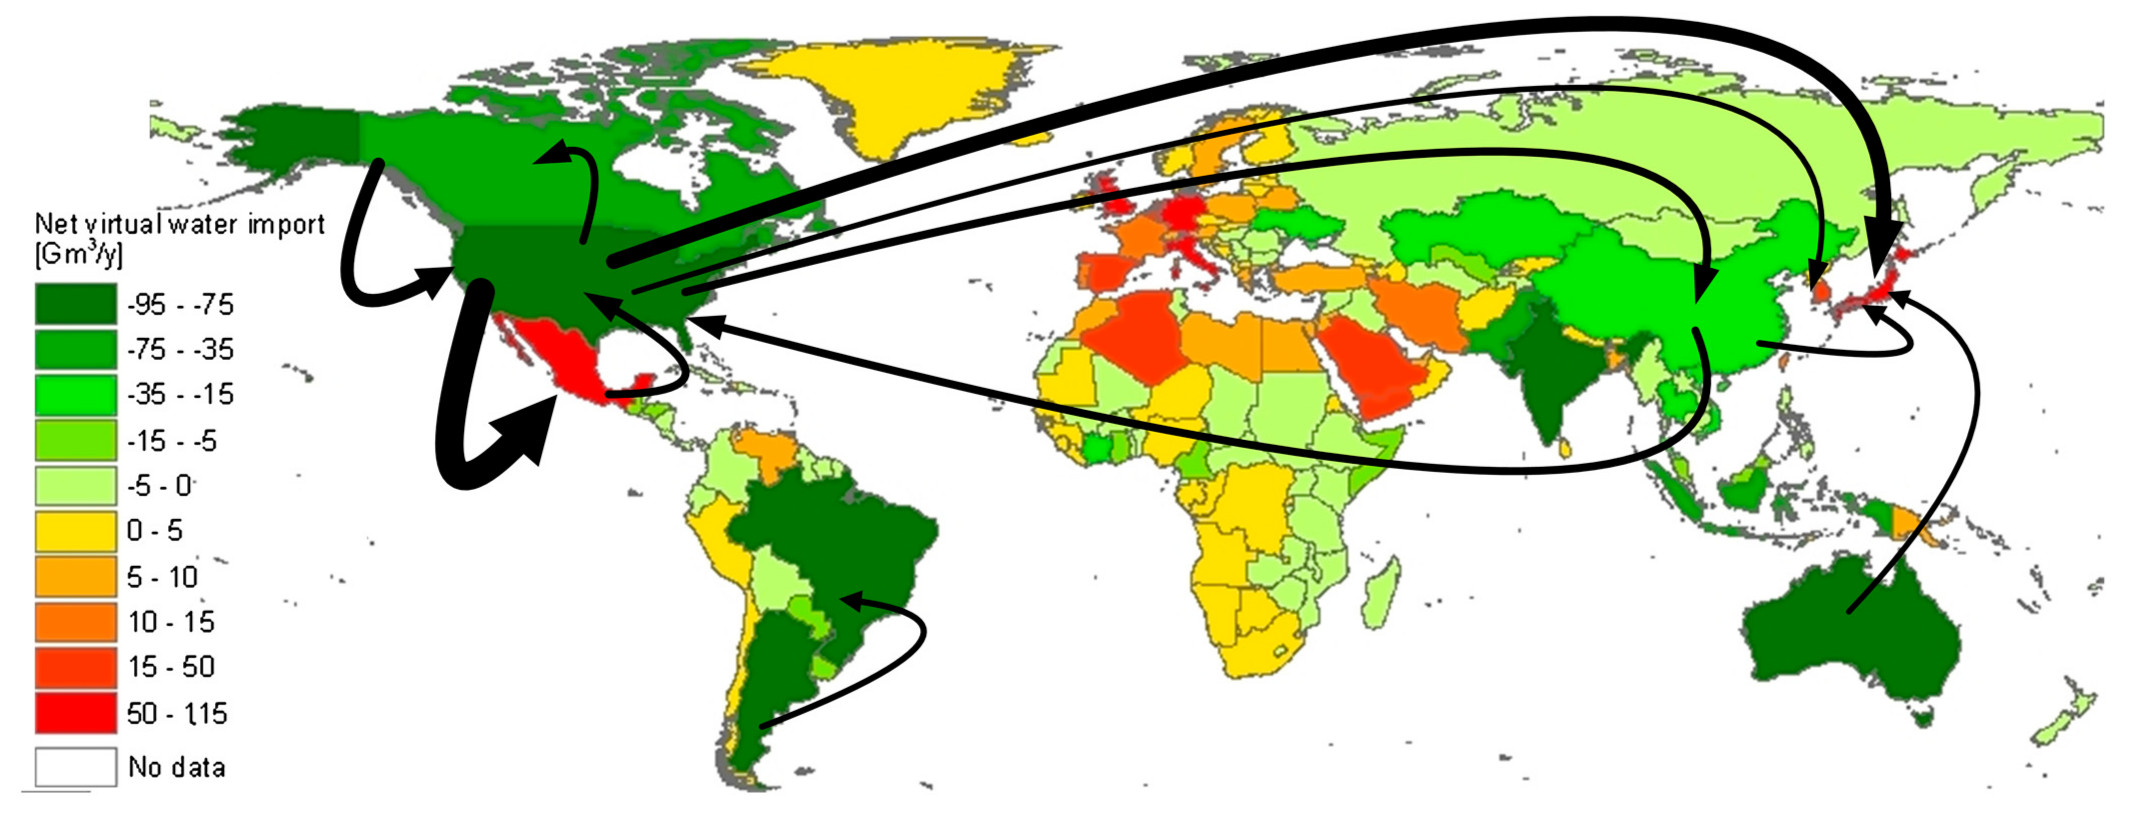 Mapa global del balance de agua virtual y flujos entre países